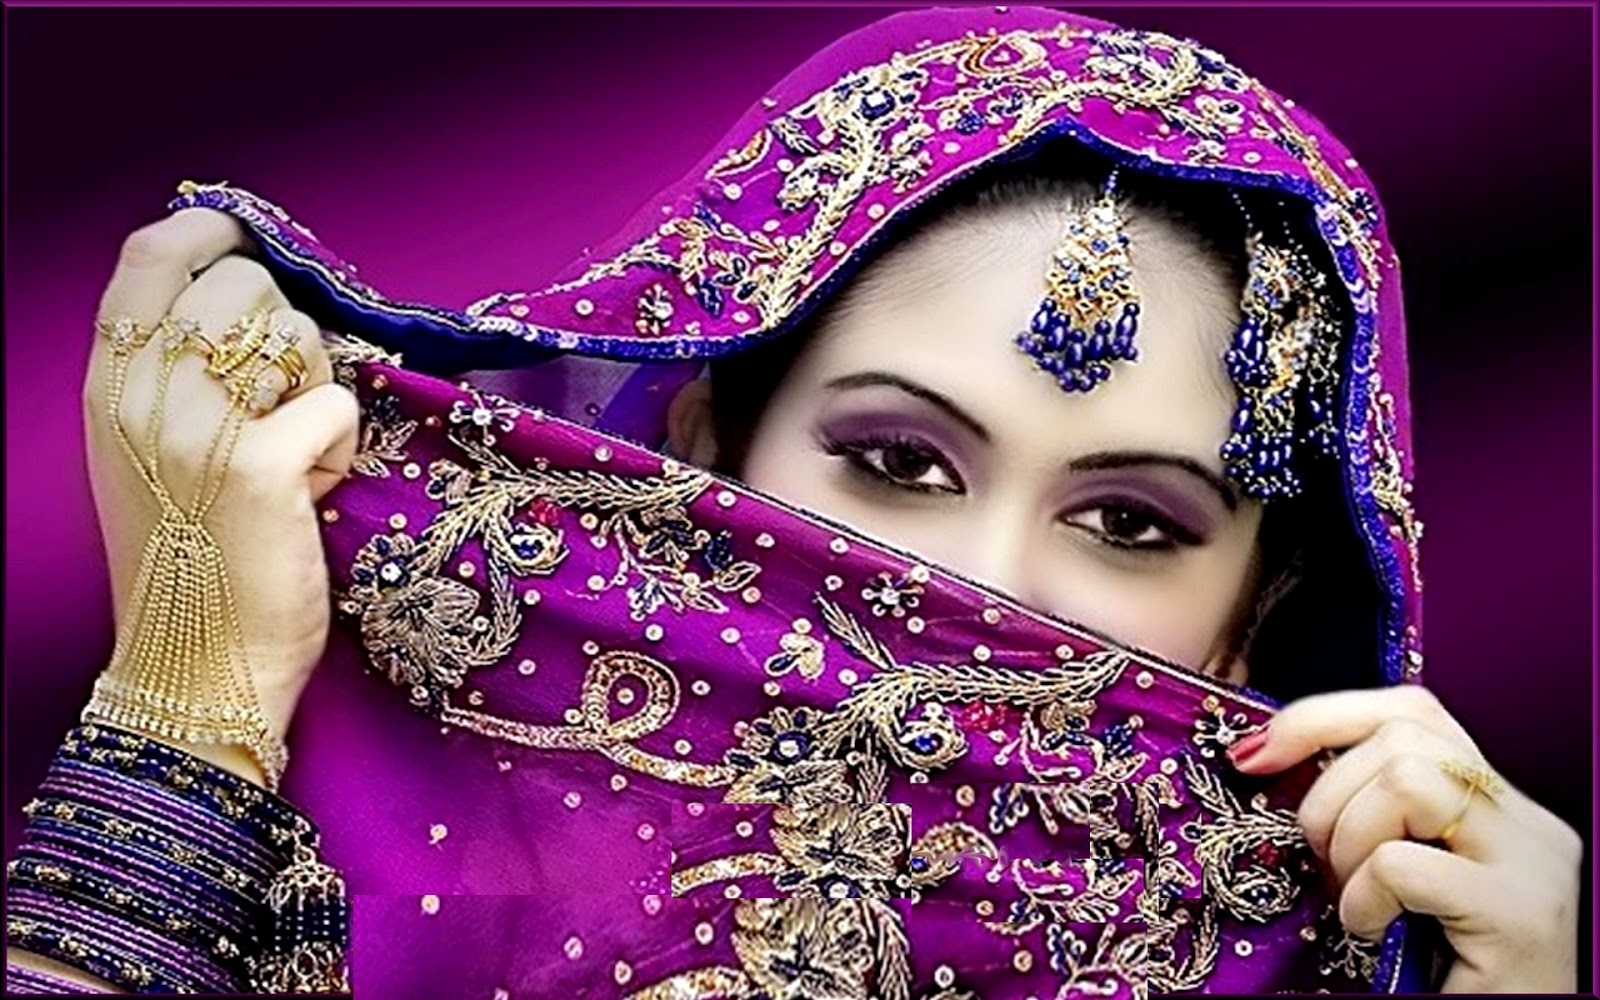 Красивое арабское видео. Женщина в арабском обществе. Красивые арабские женские глаза фото. Салма я Салама на арабском. Hijab background.